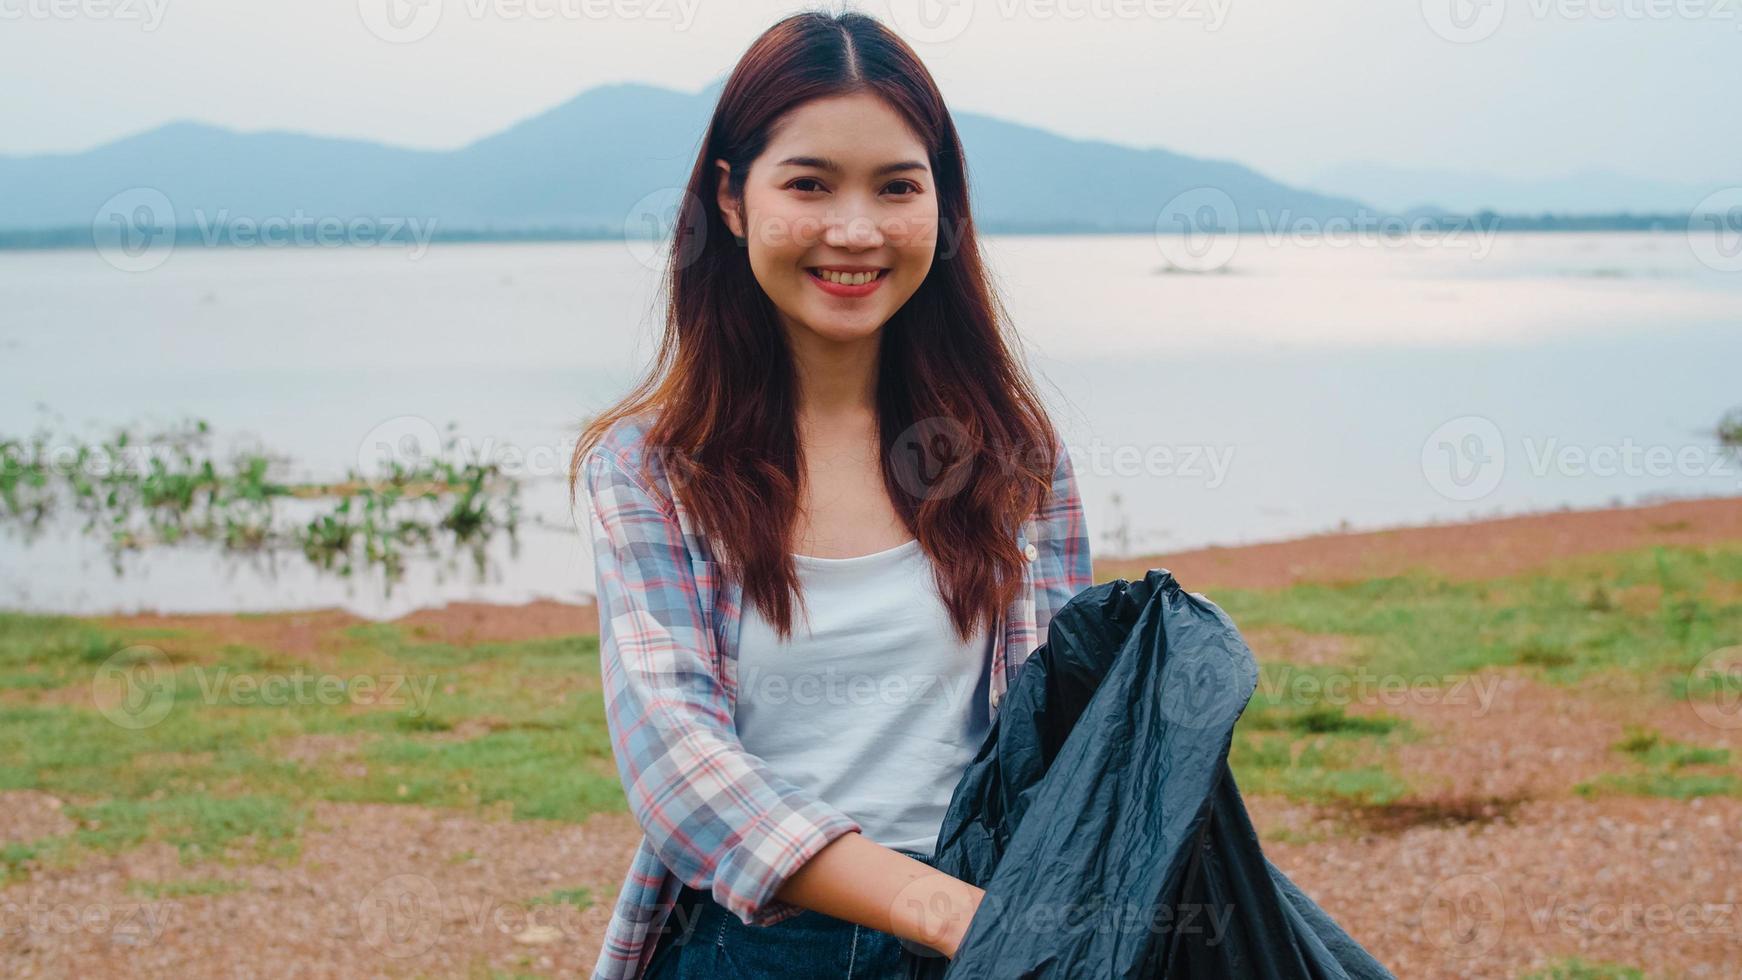 El retrato de una joven dama de Asia que los voluntarios ayudan a mantener la naturaleza limpia sosteniendo botellas de plástico y bolsas de basura negras en la playa. concepto sobre los problemas de contaminación de la conservación del medio ambiente. foto